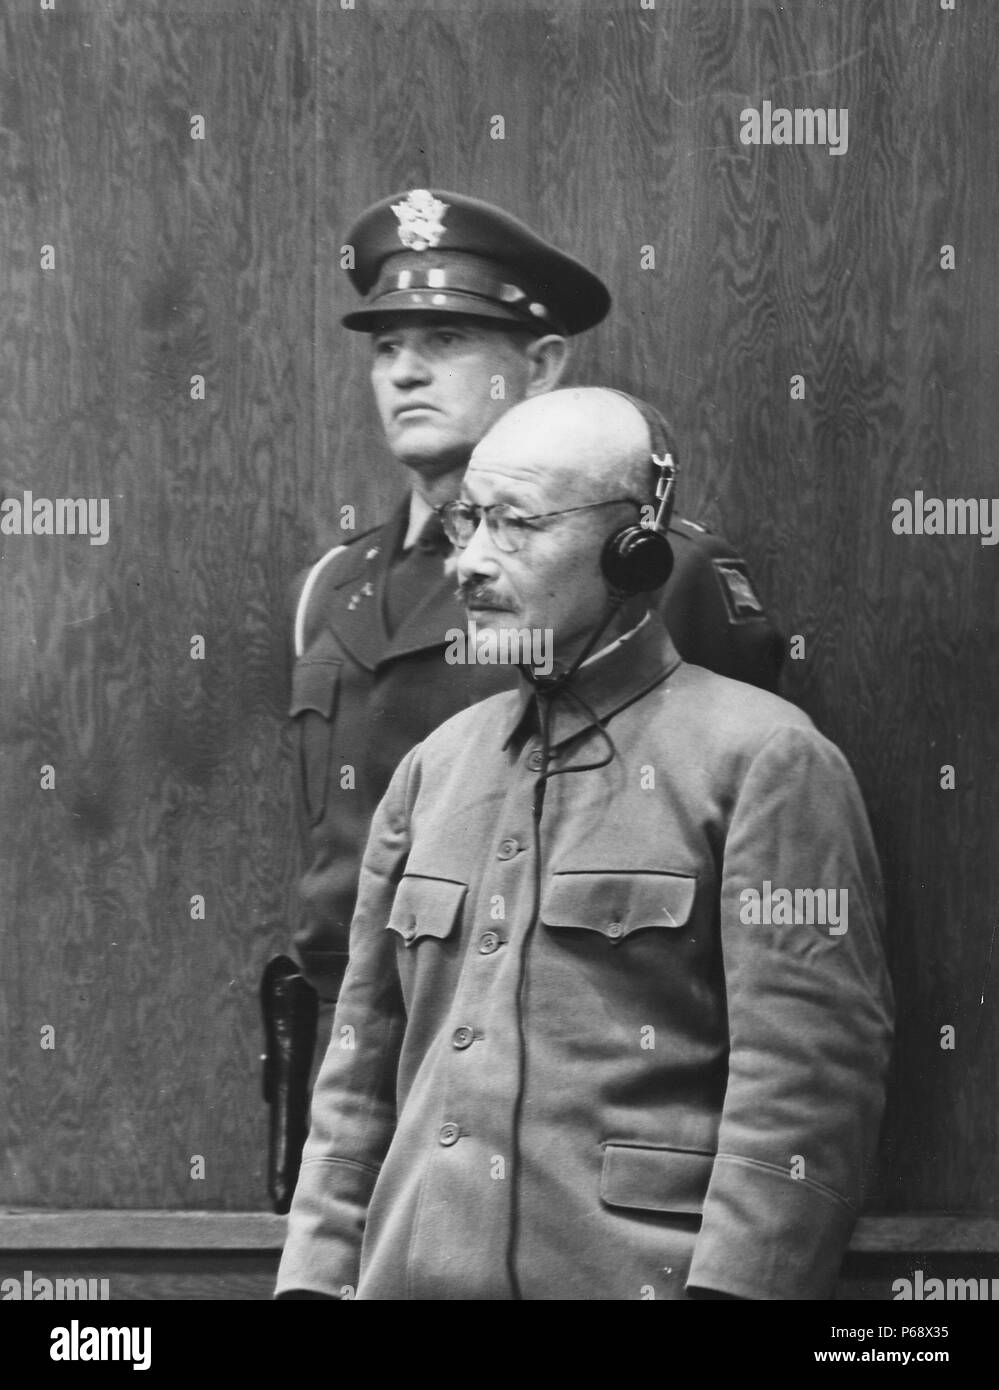 Photographie de Hideki Tōjō recevant sa peine de mort (1884-1948) Général de l'Armée impériale japonaise, le chef de l'Association de soutien à l'Autorité, et le 40e premier ministre du Japon durant la majeure partie de la Seconde Guerre mondiale. Datée 1948 Banque D'Images